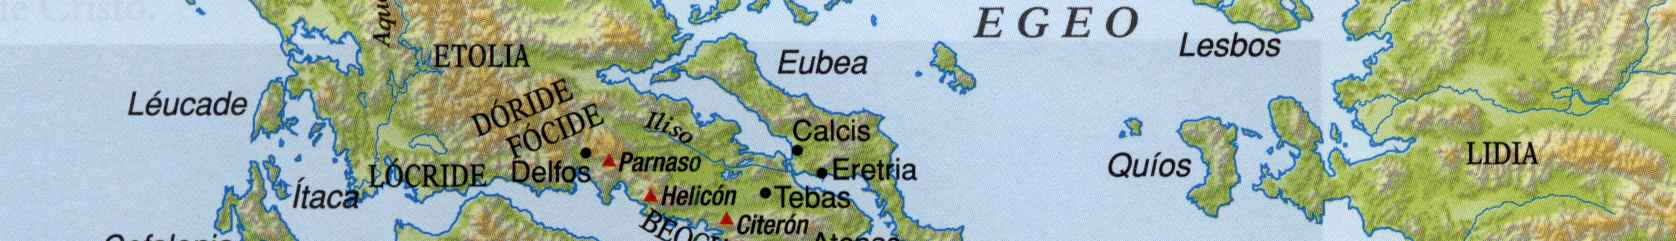 Grecia insular, comúnmente conocida como